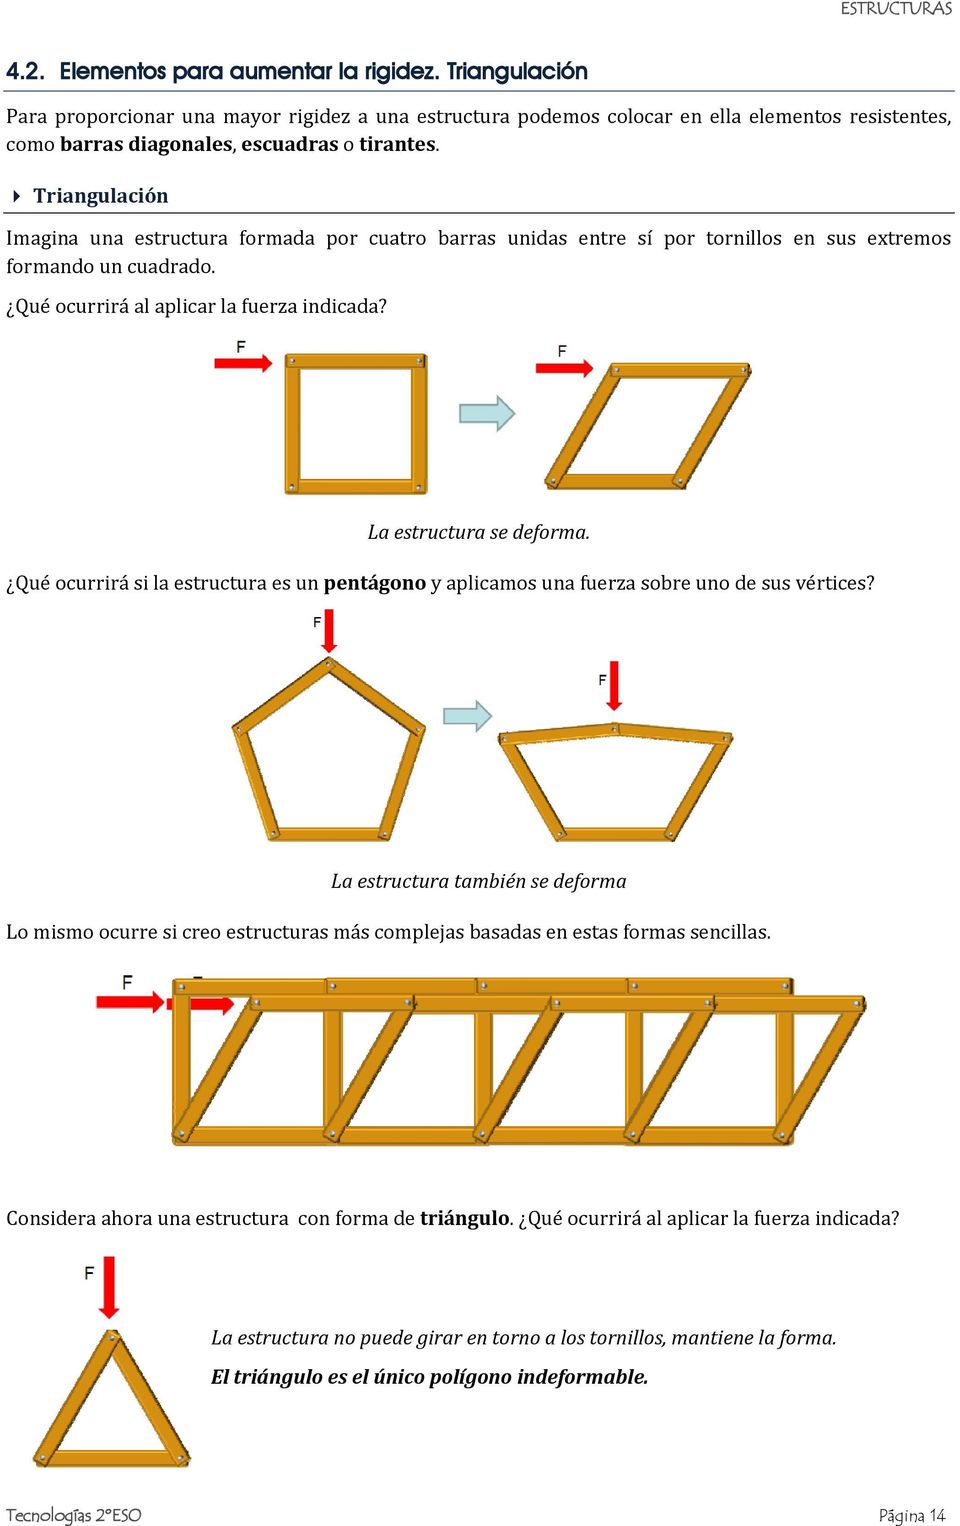 Qué ocurrirá si la estructura es un pentágono y aplicamos una fuerza sobre uno de sus vértices?